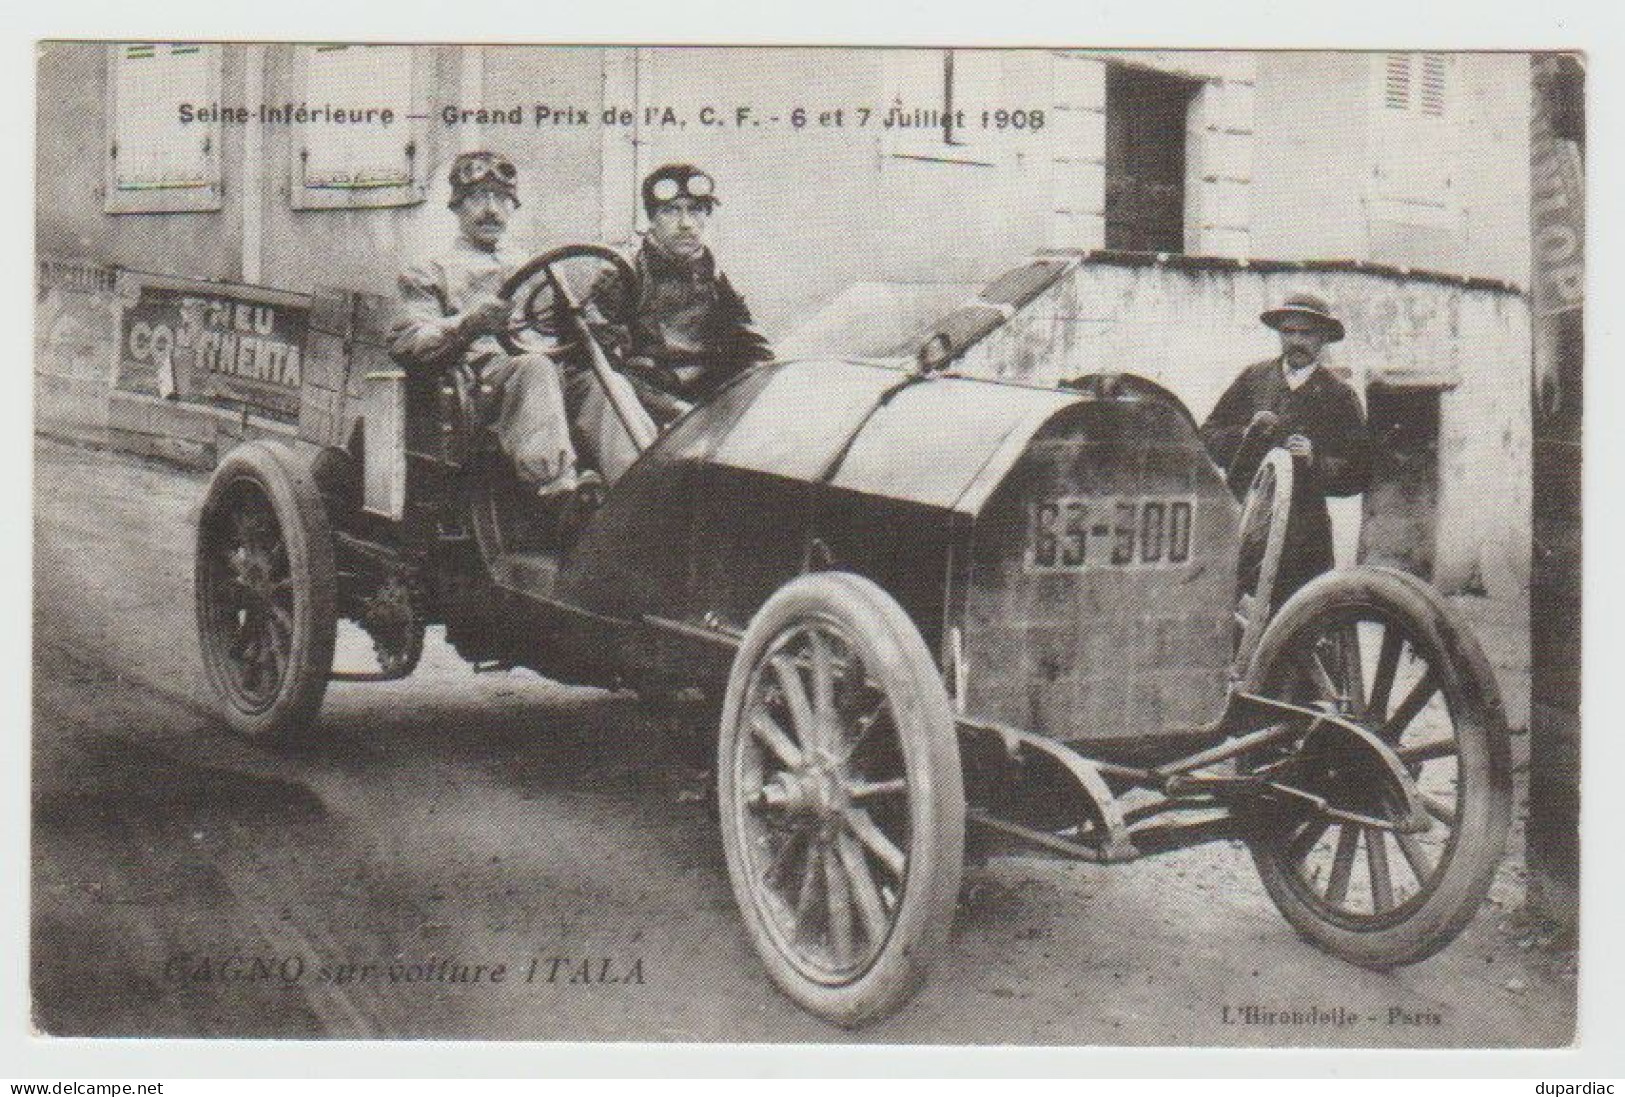 Sport Automobile / Seine Inférieure -- Grand Prix De L'A.C.F. - 6 Et 7 Juillet 1908. GAGNO Sur Voiture ITALA. - Rally's